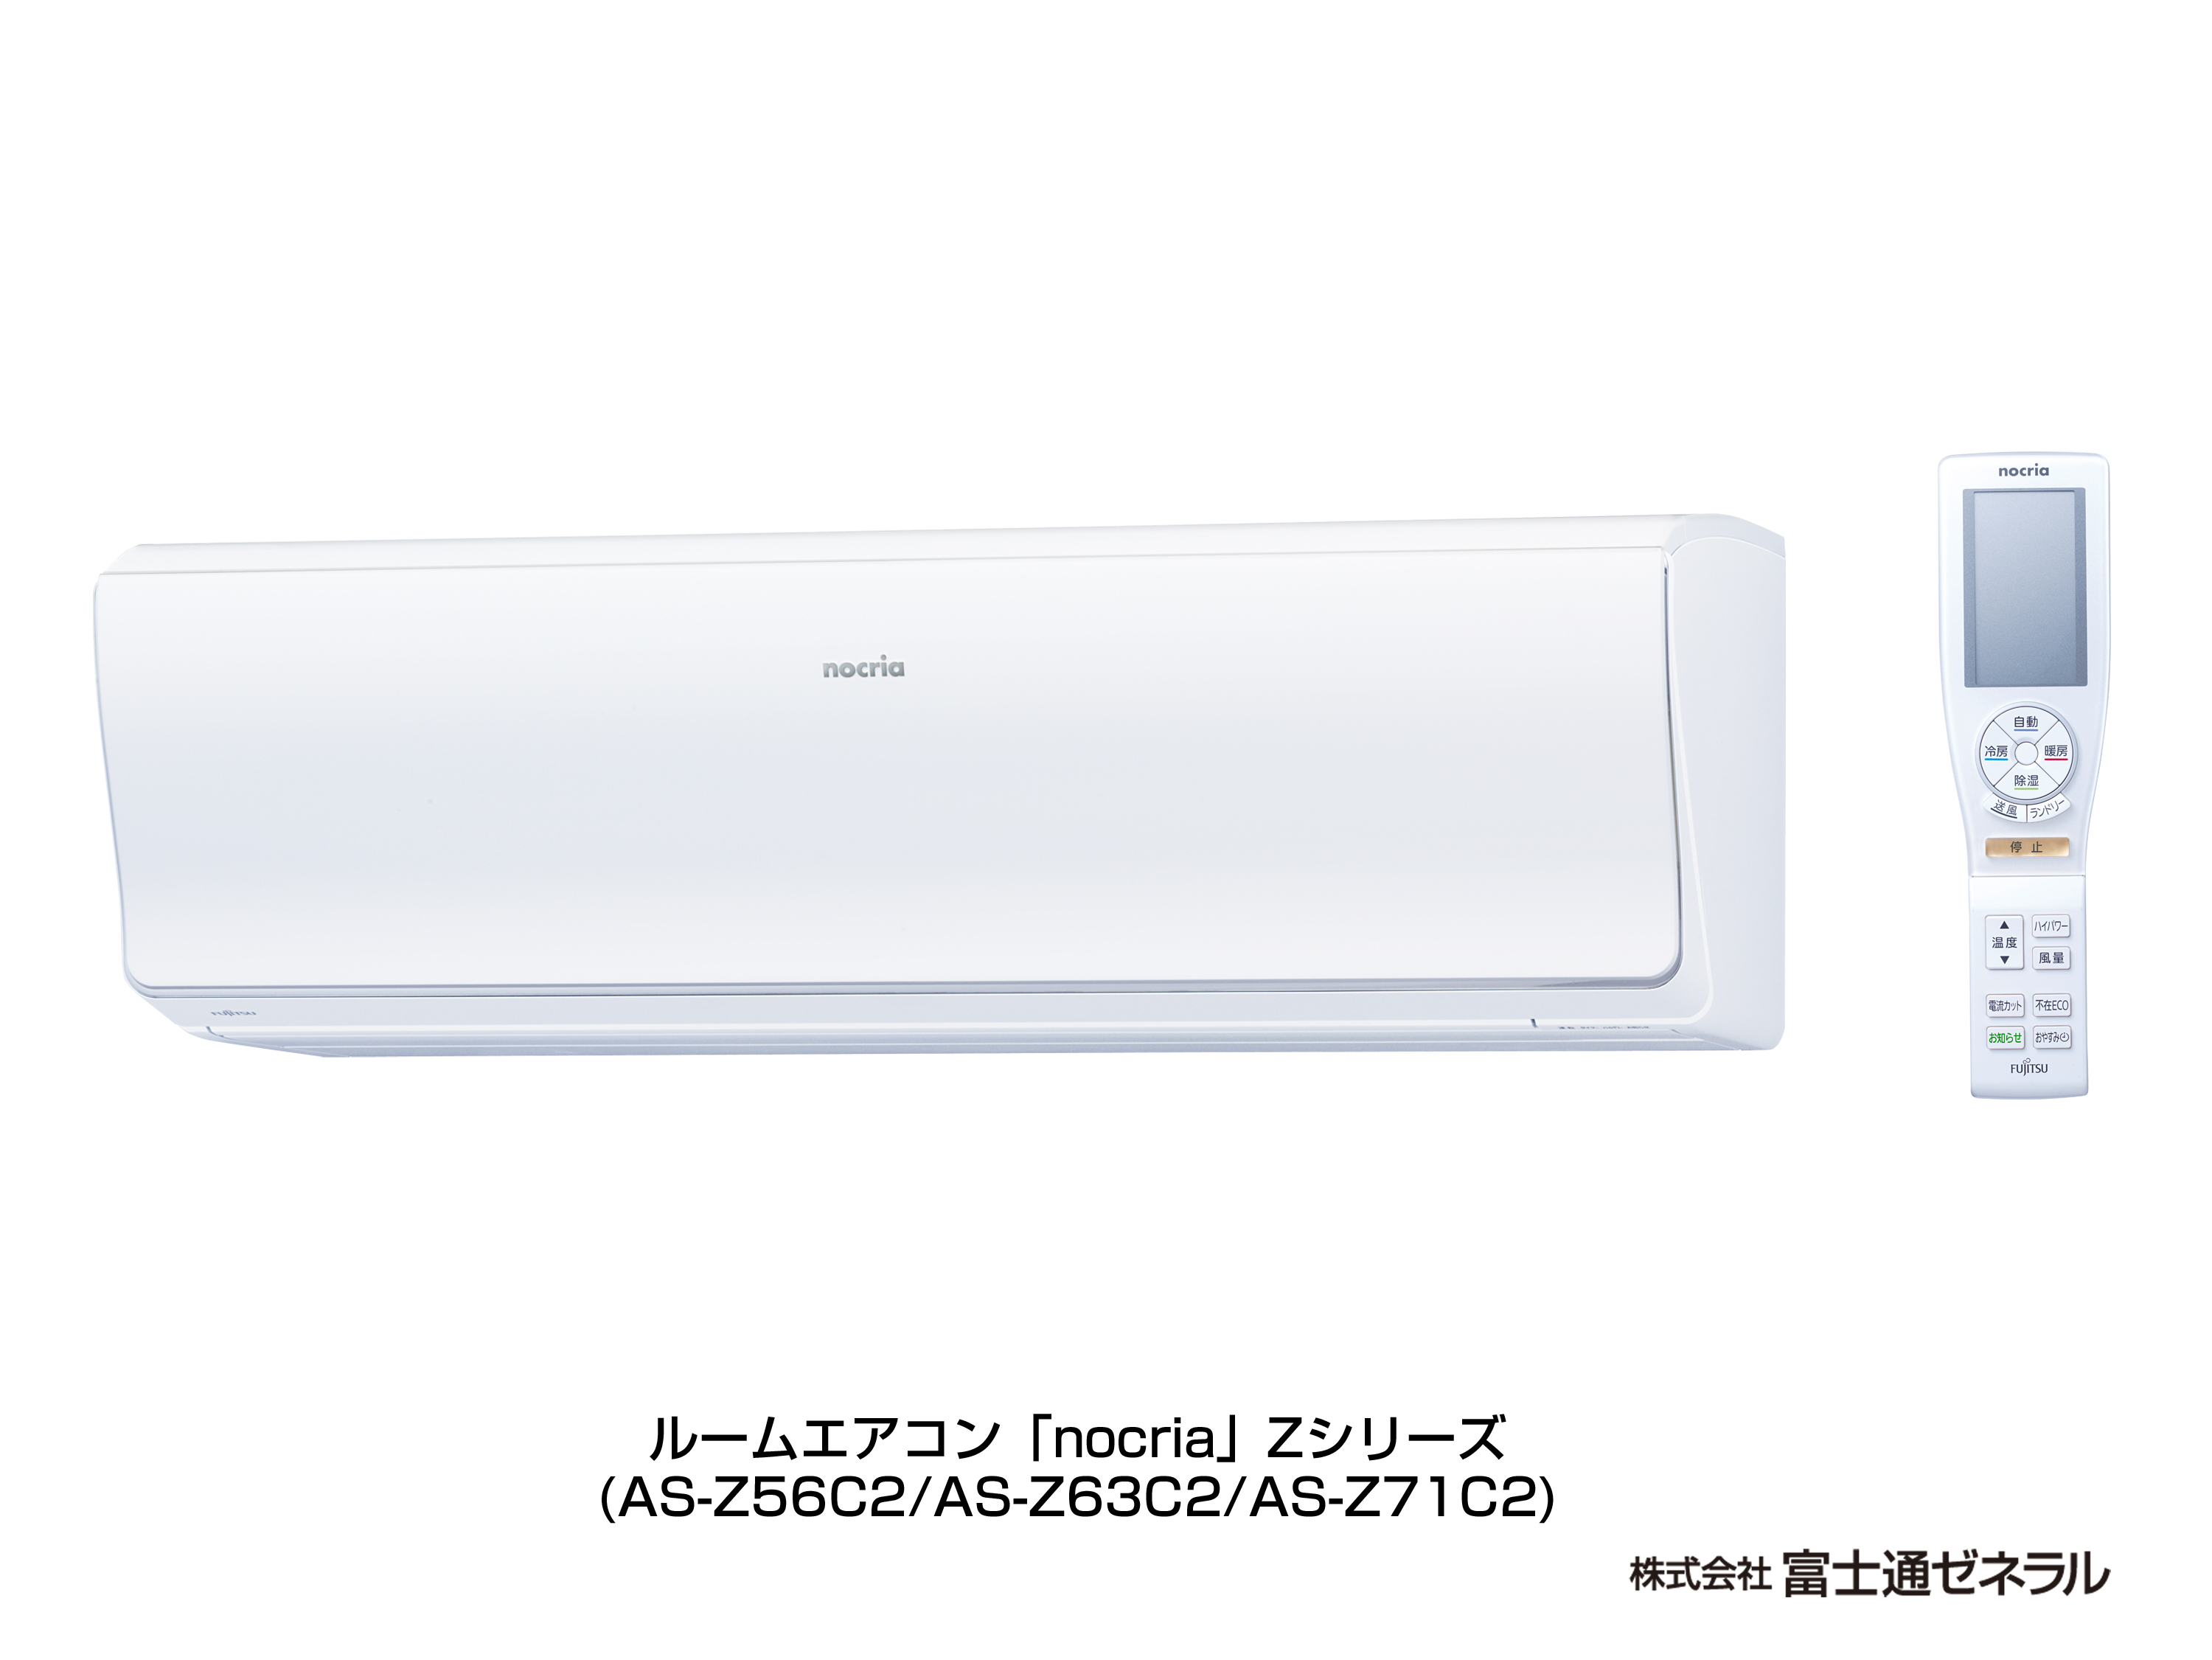 エアコン : AS-Z56C2（2013年度「ノクリア」Zシリーズ） - 富士通 